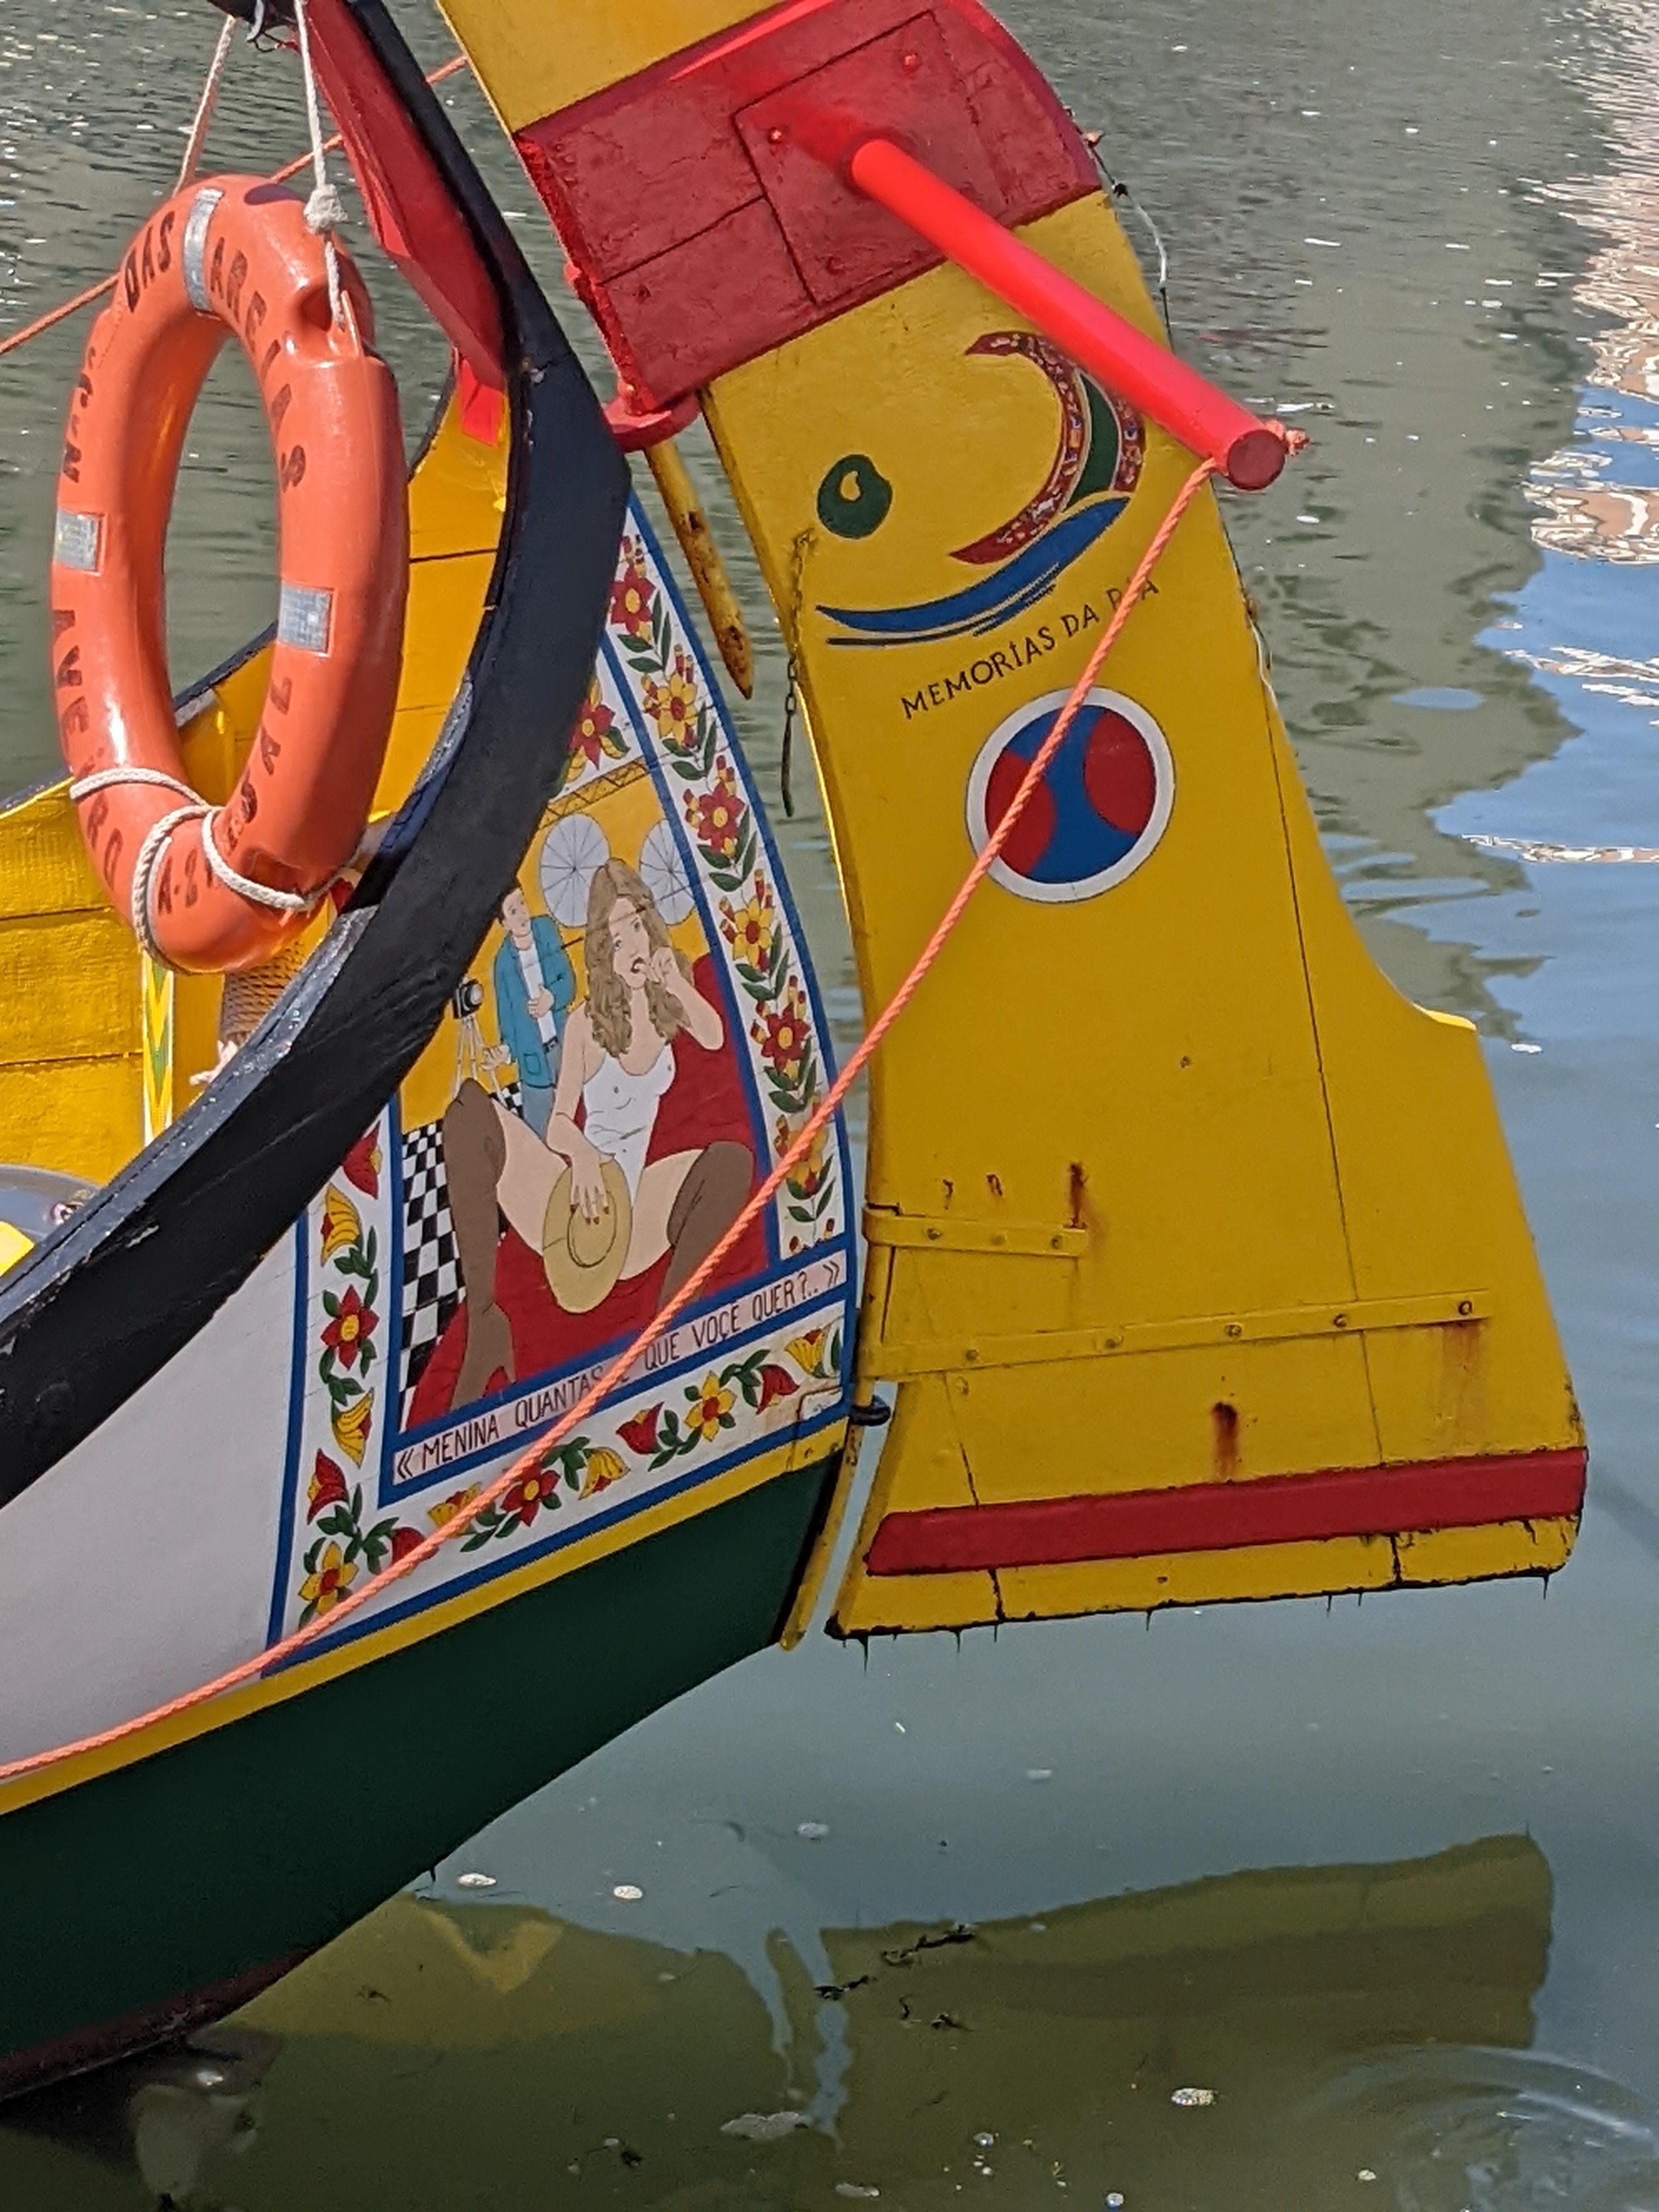 Barco Moliceiro risqué artwork